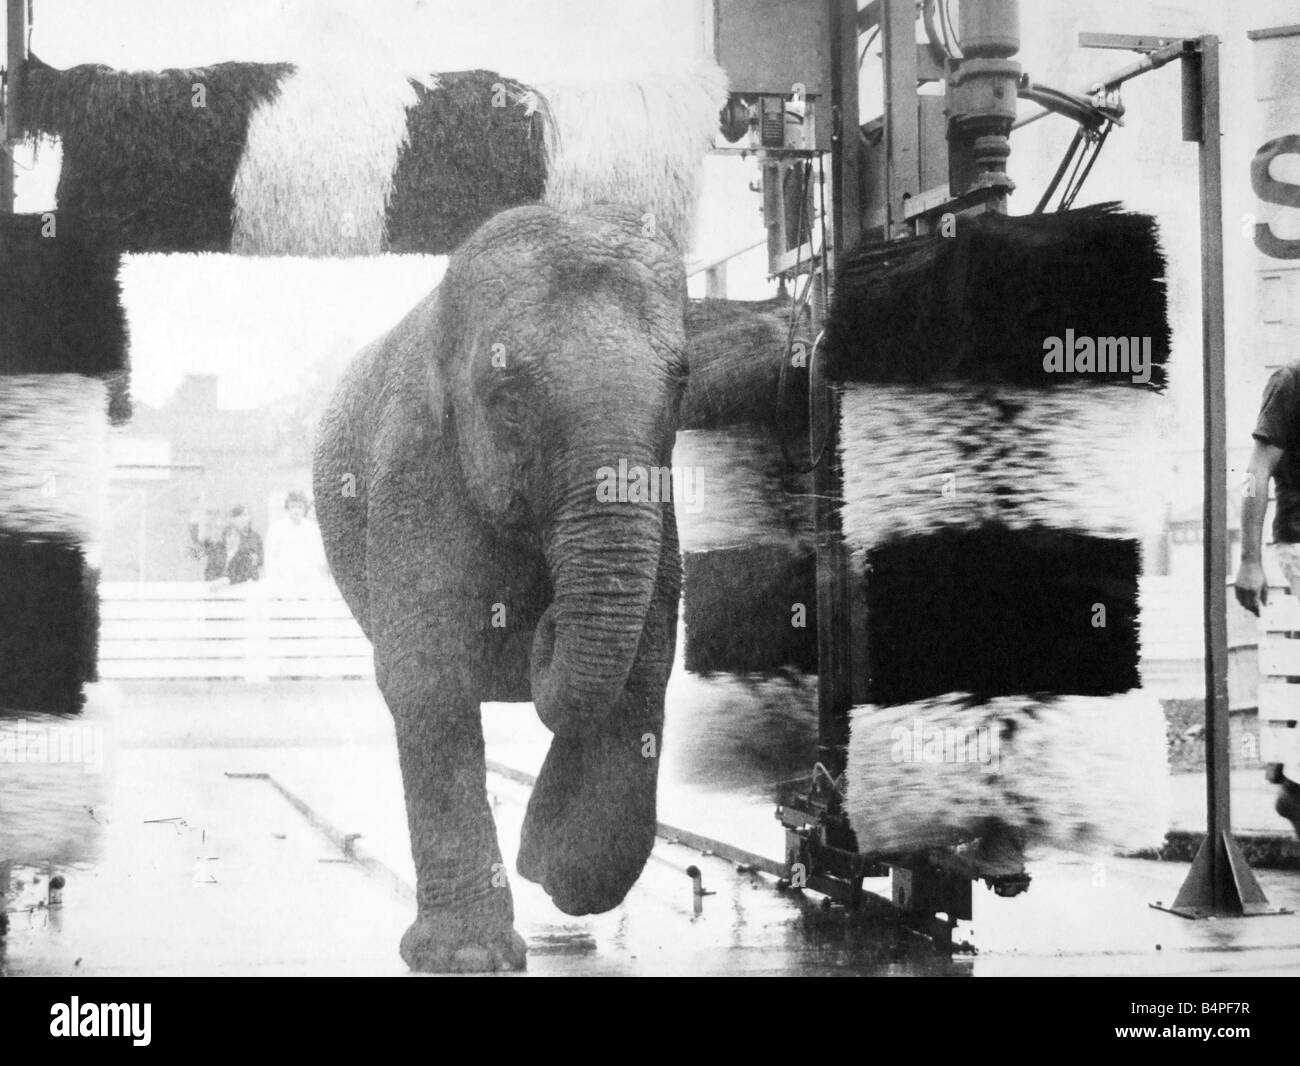 Walsall Football Club s lavage de voiture est devenu un Jumbo jet pour une fois aujourd'hui Gilda un éléphant de cirque de 2 ans a pris un bain dans le lavage de voiture panda sur le parvis de la station de charge 1970 Fellows Park Banque D'Images